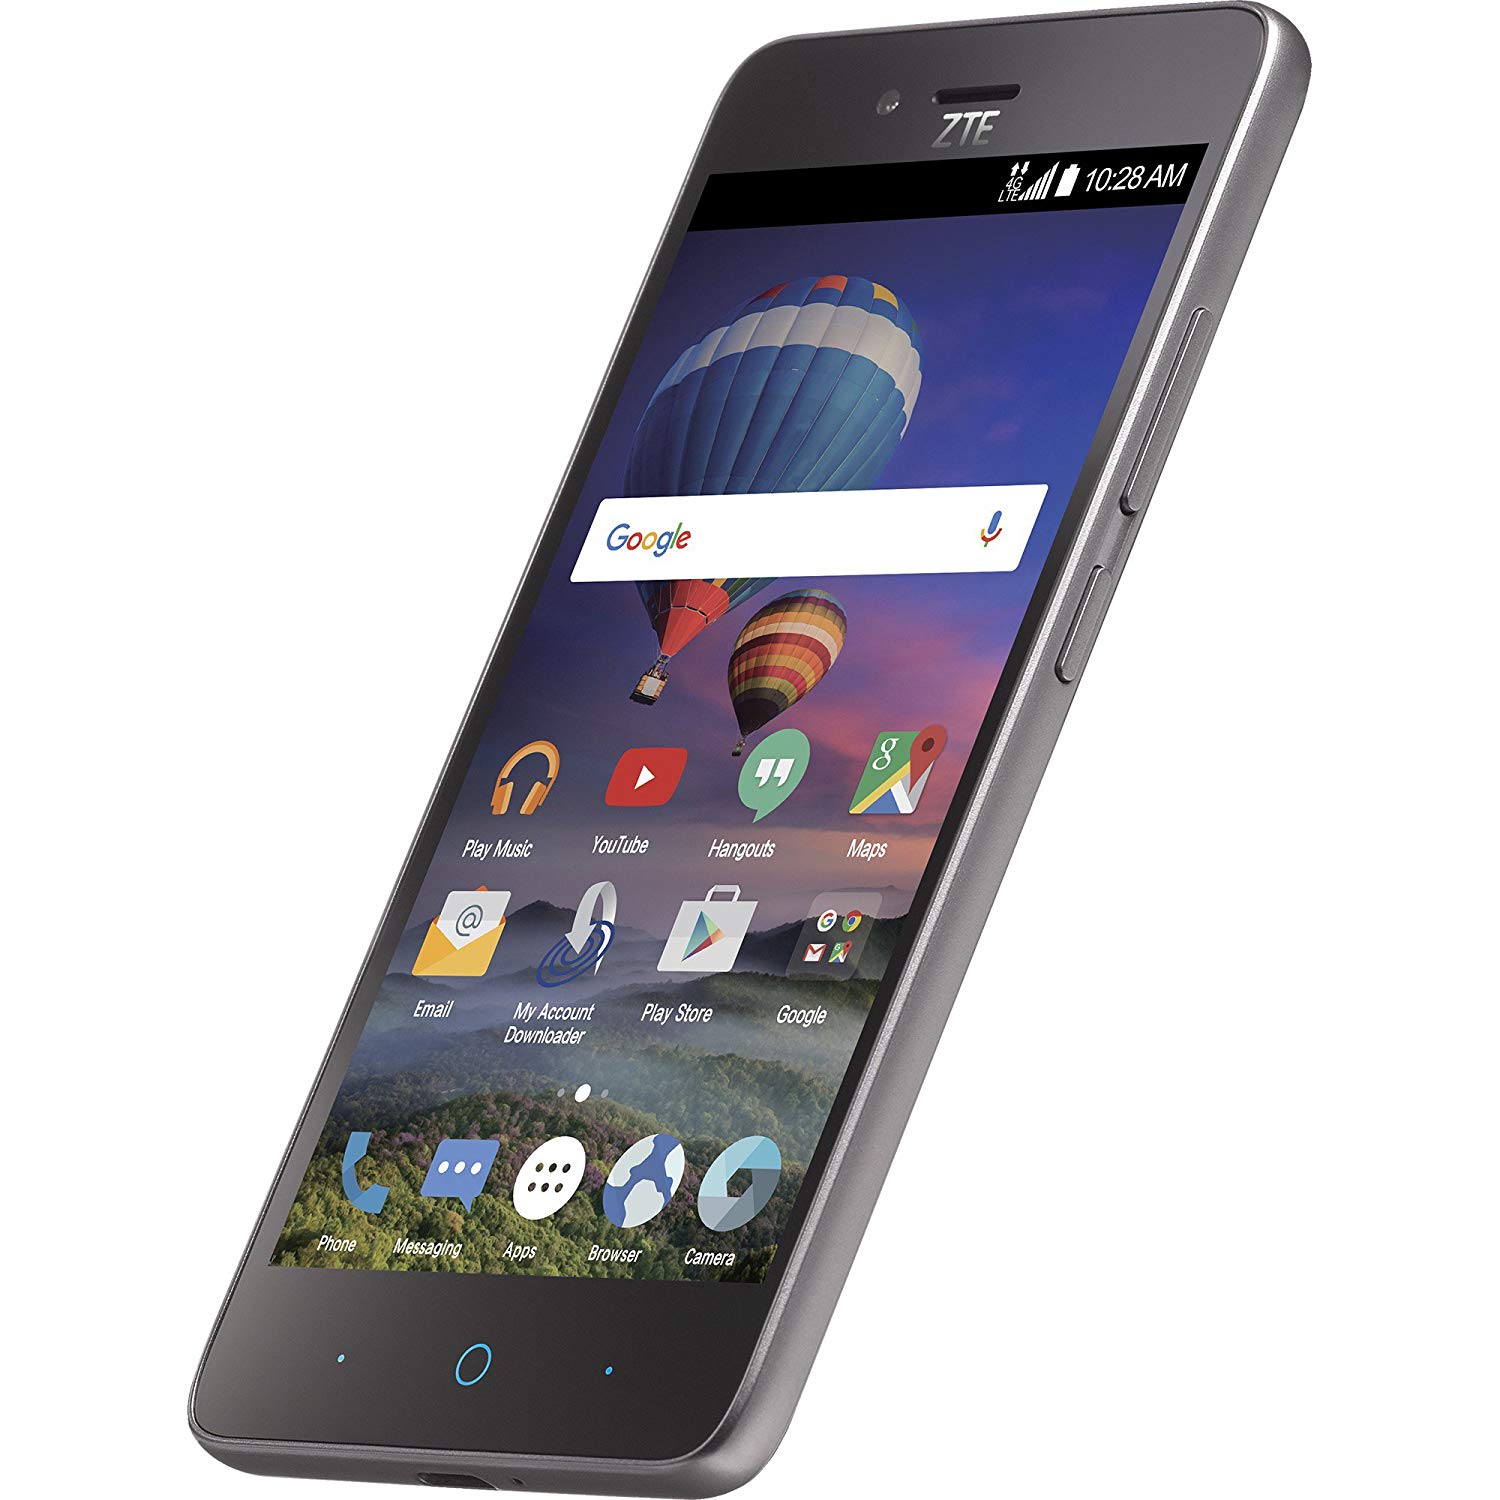 TracFone ZTE ZFIVE L 4G LTE Prepaid Smartphone (Black, Includes 1 Year